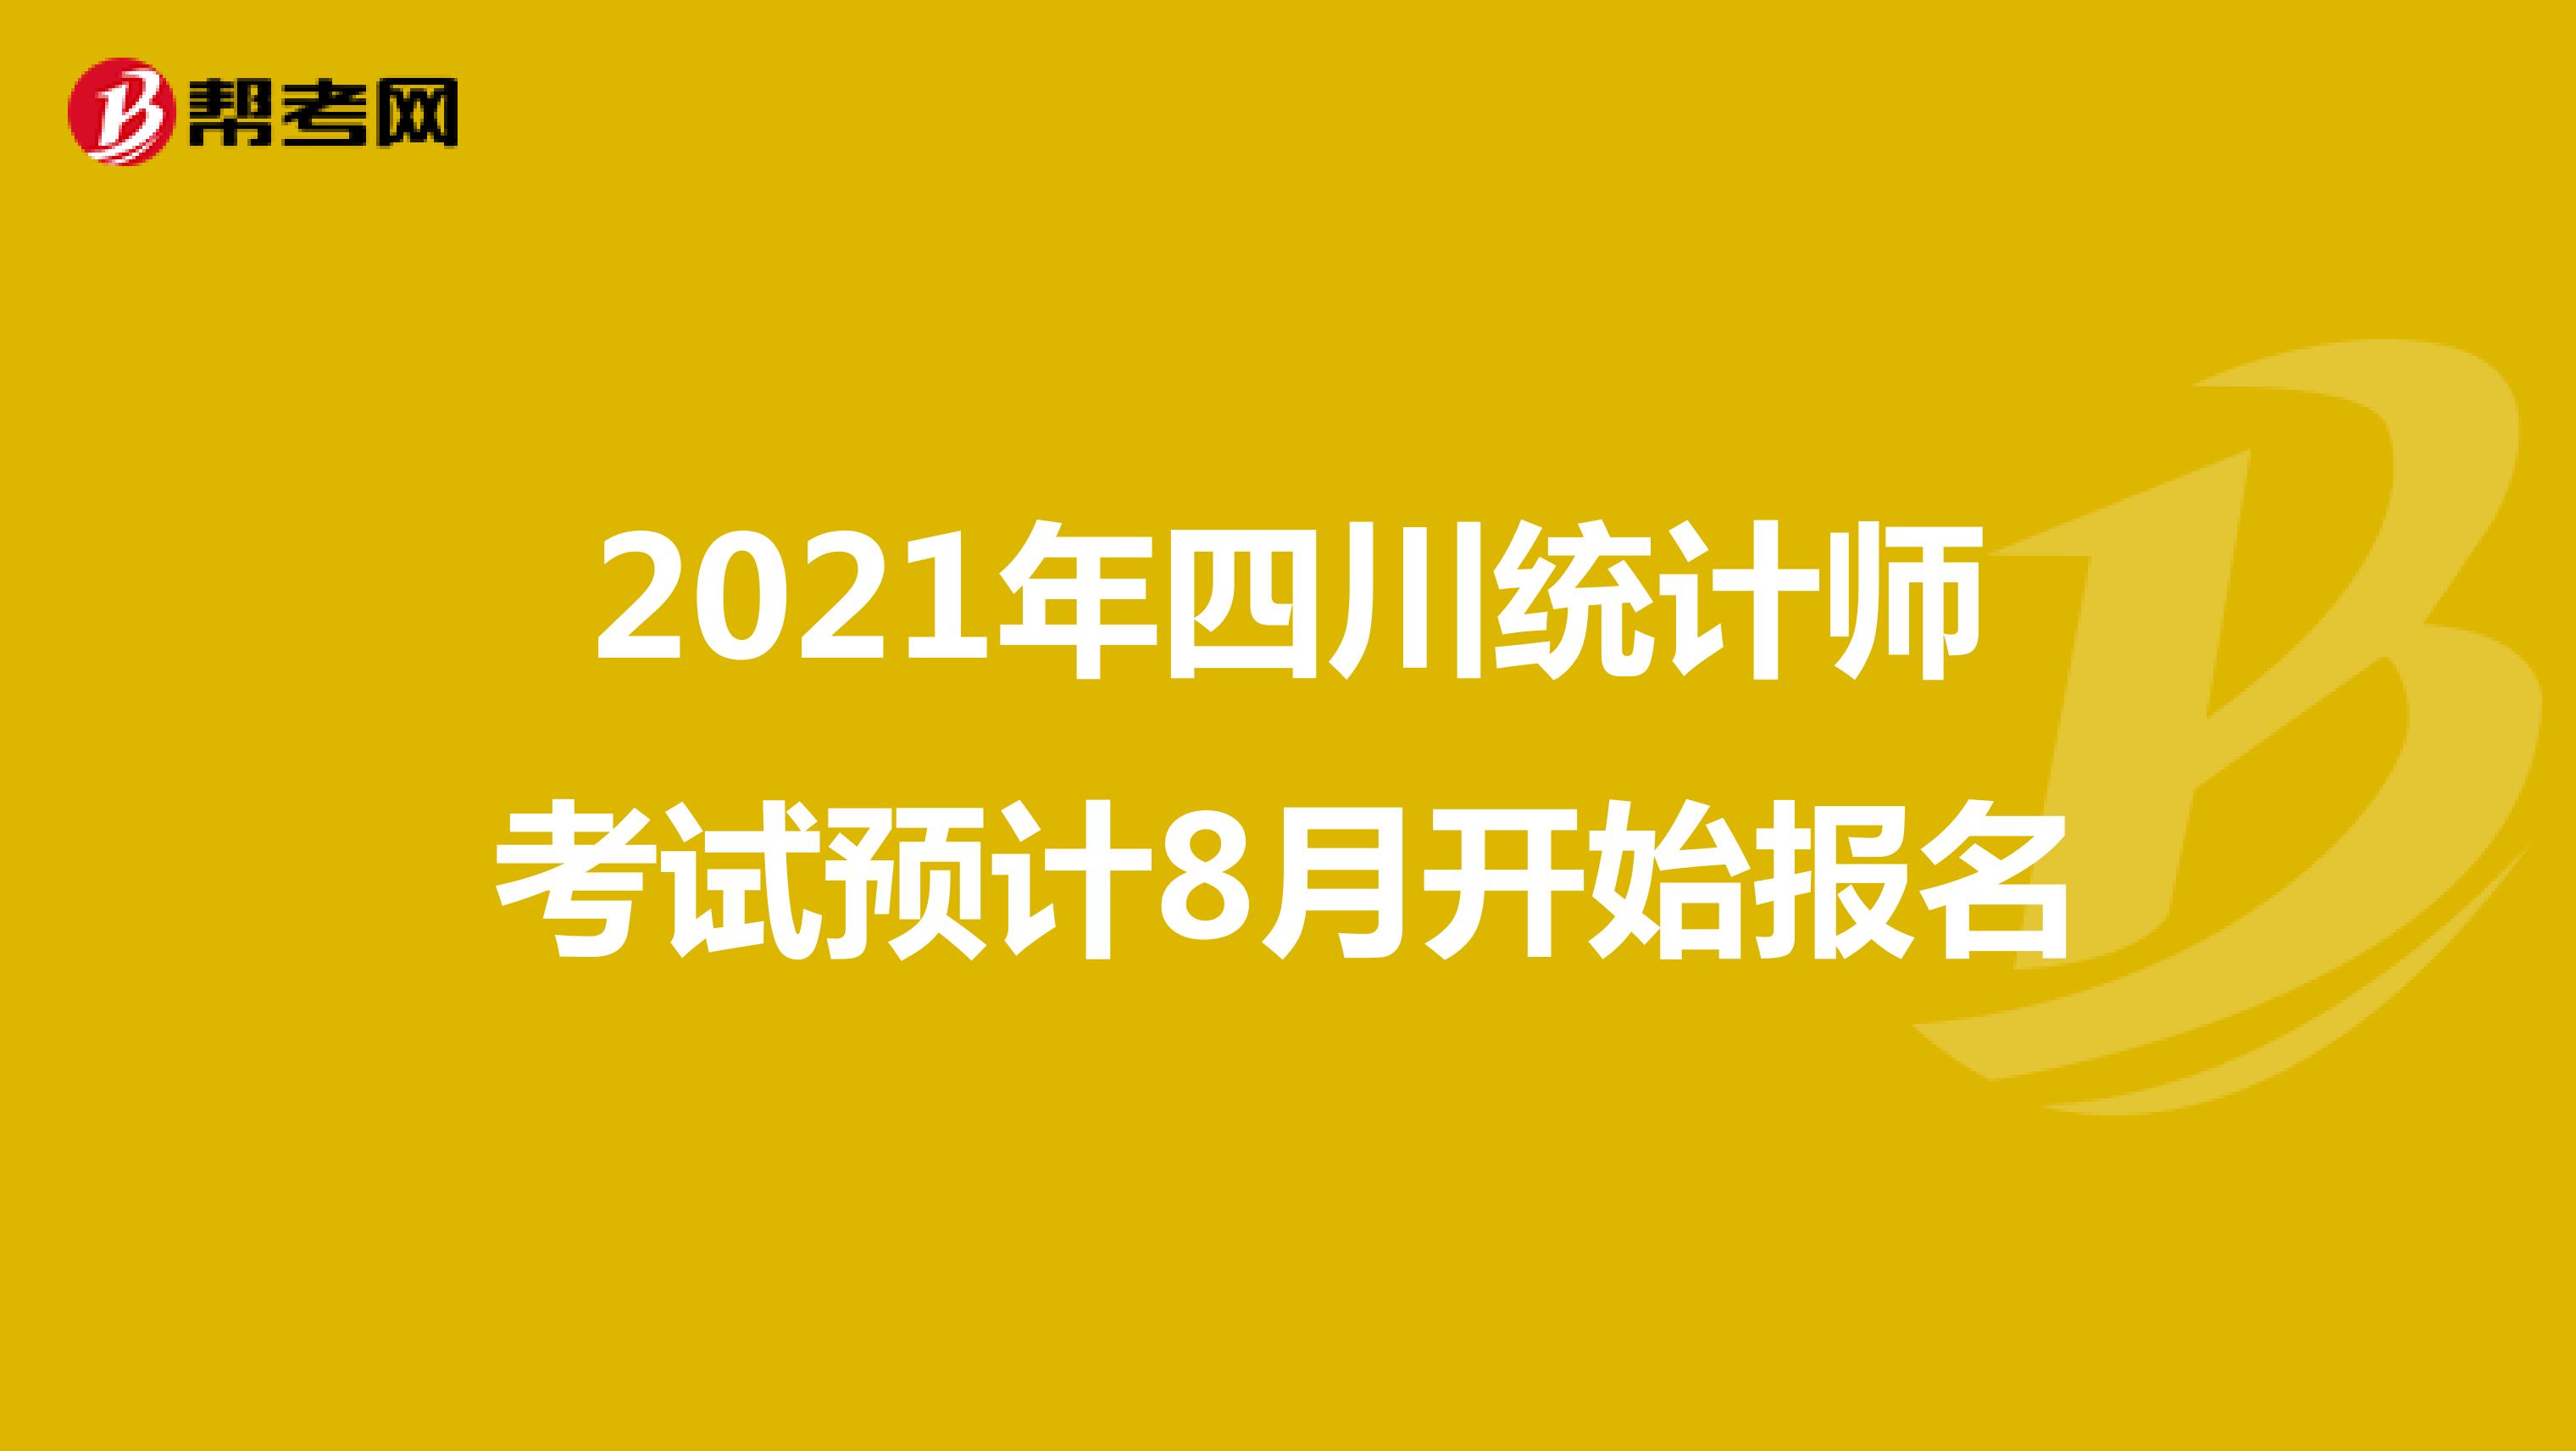 2021年四川统计师考试预计8月开始报名